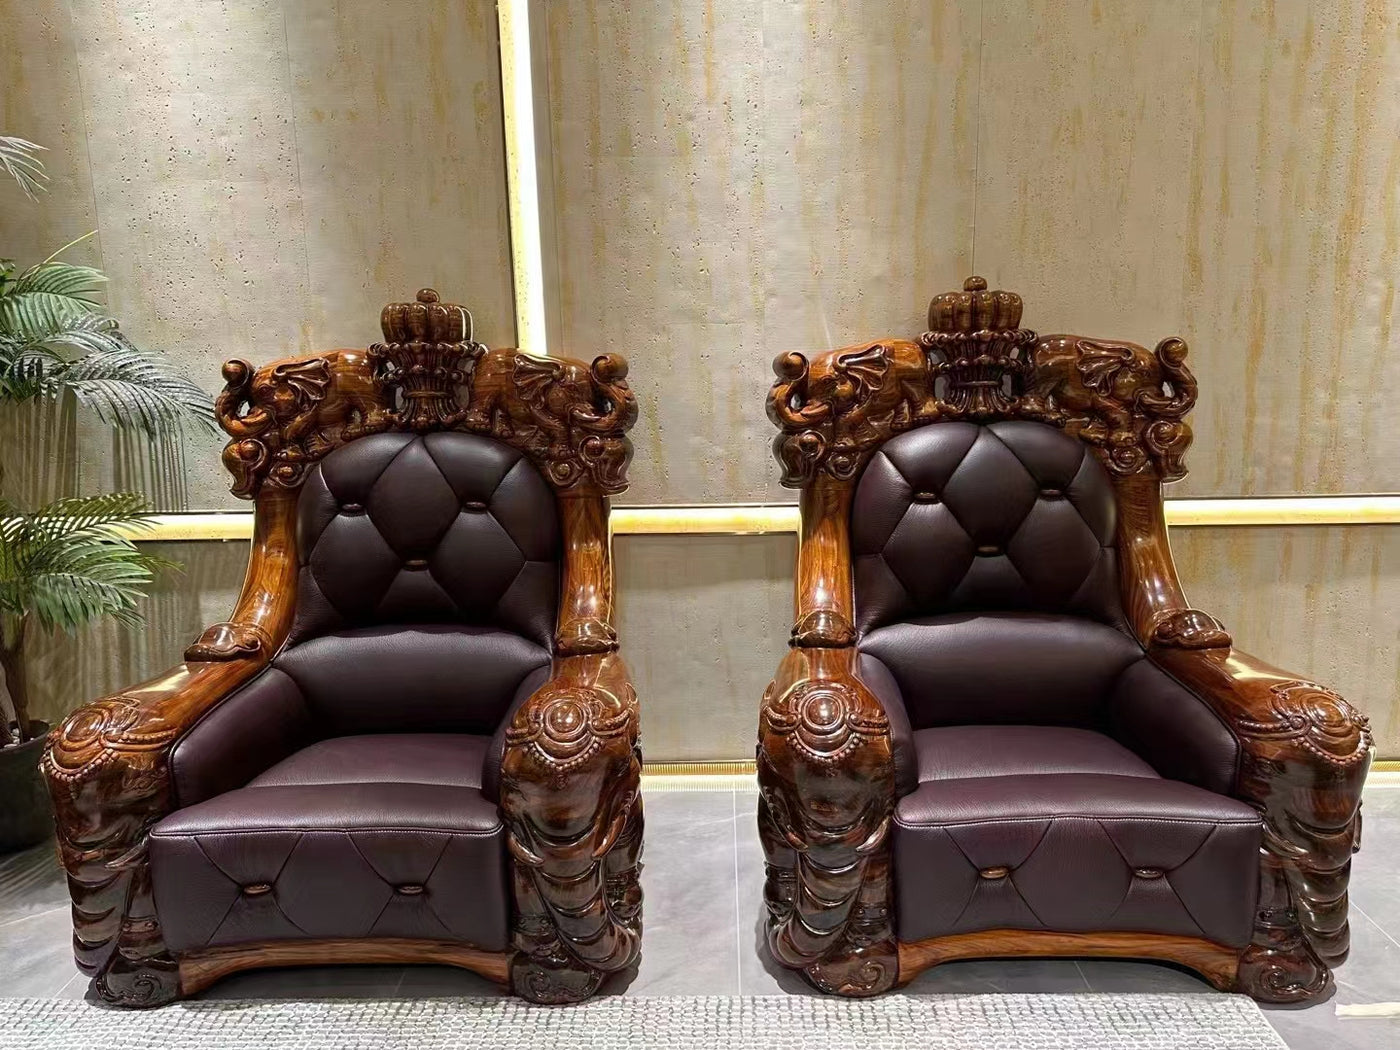 Luxury king ebony wood leather sofa